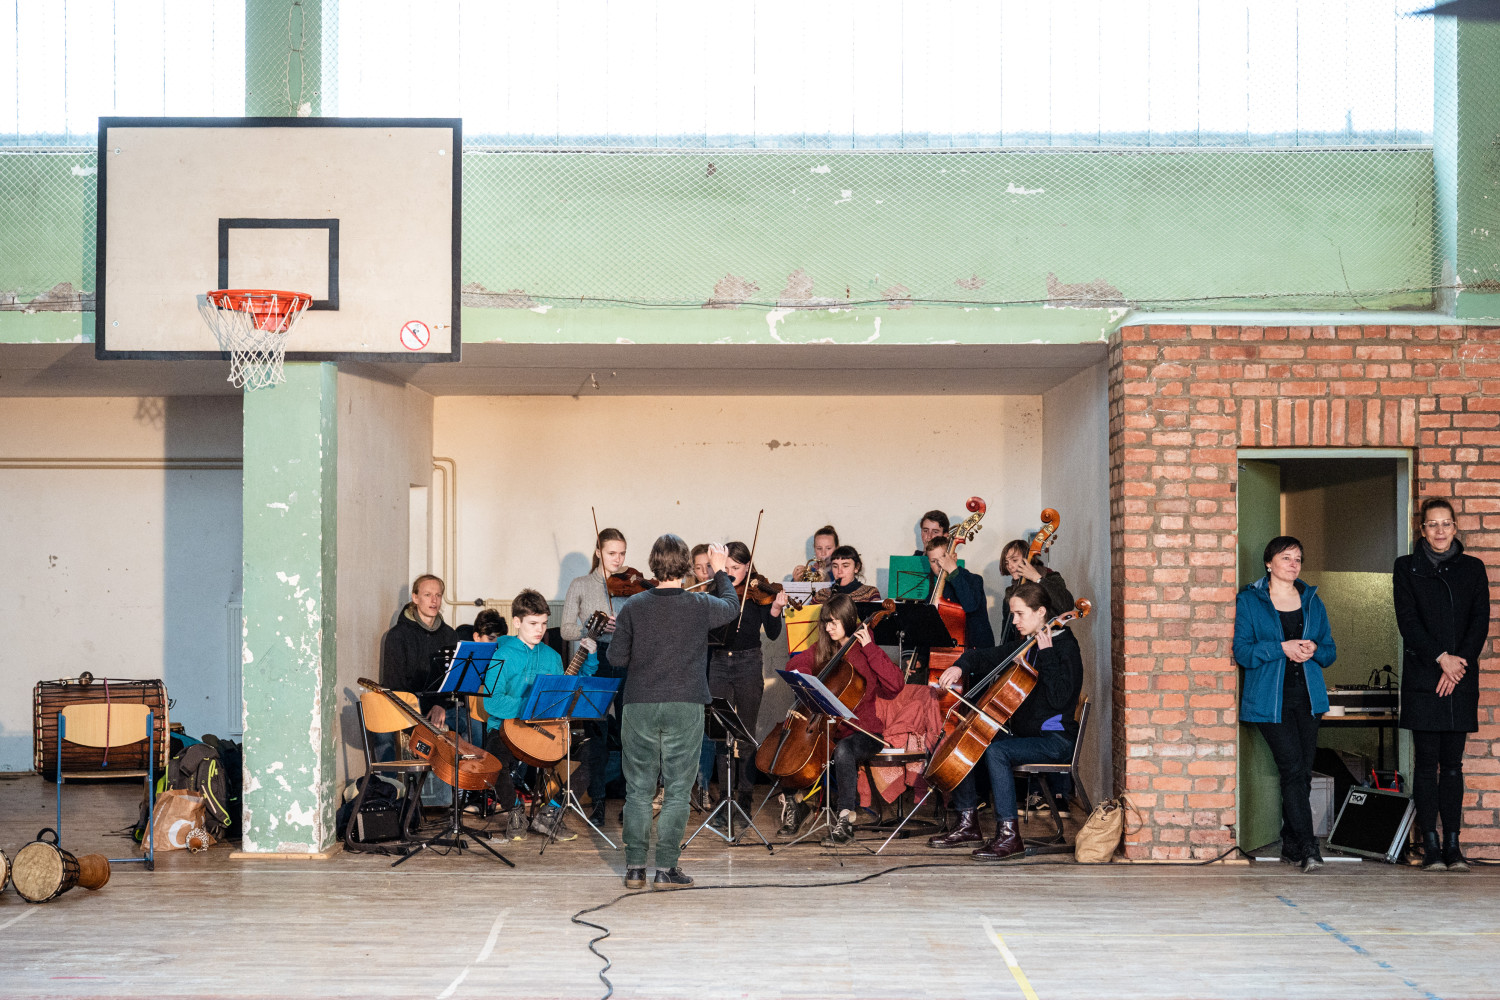 SOS Pilotprojekt Weimar: Beim Richtfest des Neubaus der Staatlichen Gemeinschaftsschule Weimar spielt das Schülerorchester in der Turnhalle